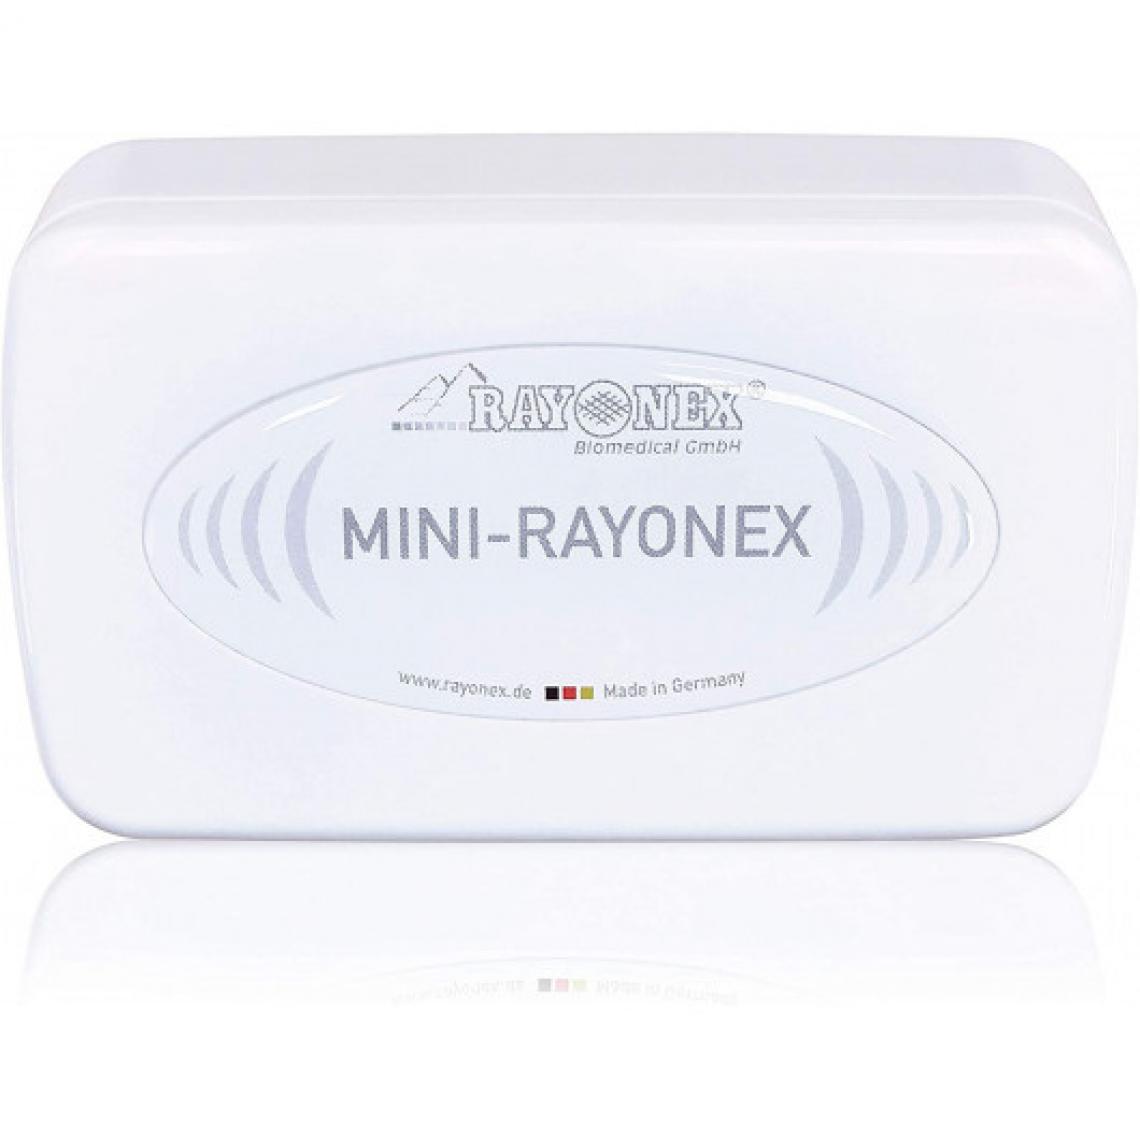 Ofs Selection - MINI RAYONEX, l'appareil mobile de biorésonance - Autre appareil de mesure